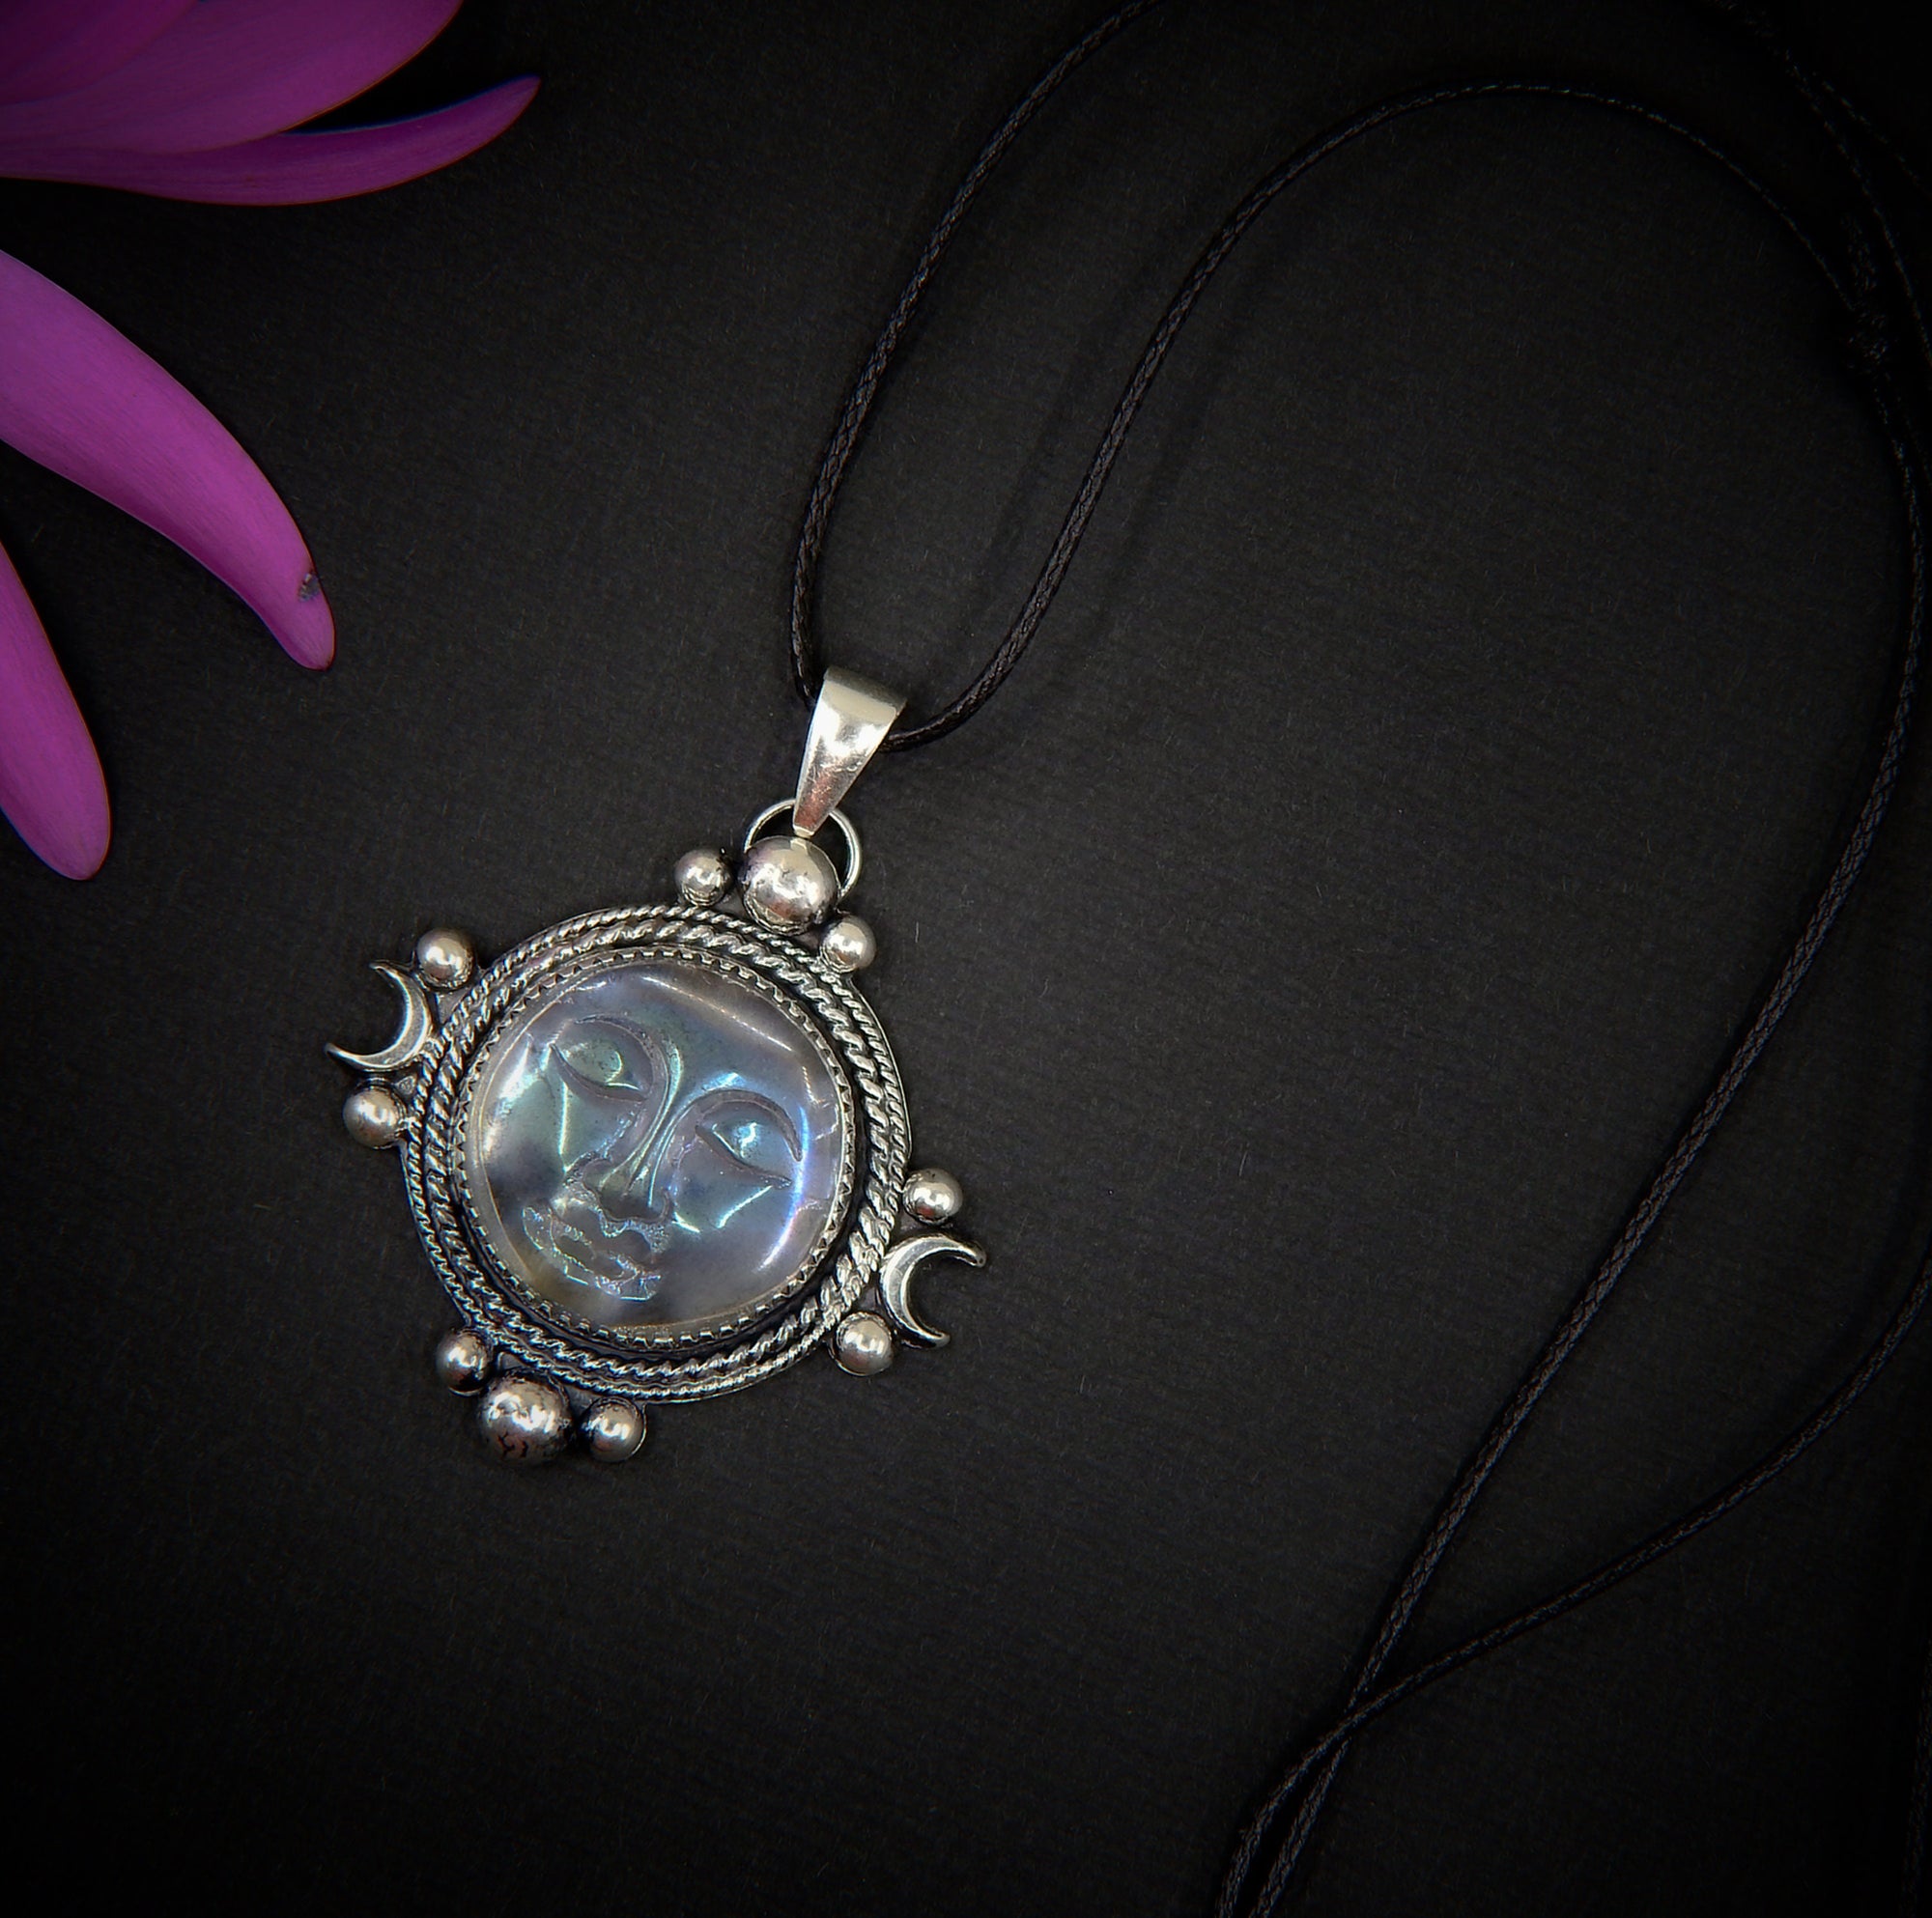 Angel Aura Quartz Moon Goddess Pendant - Sterling Silver - Angel Aura Quartz Pendant - Rainbow Quartz Necklace - Crystal Face Jewellery OOAK